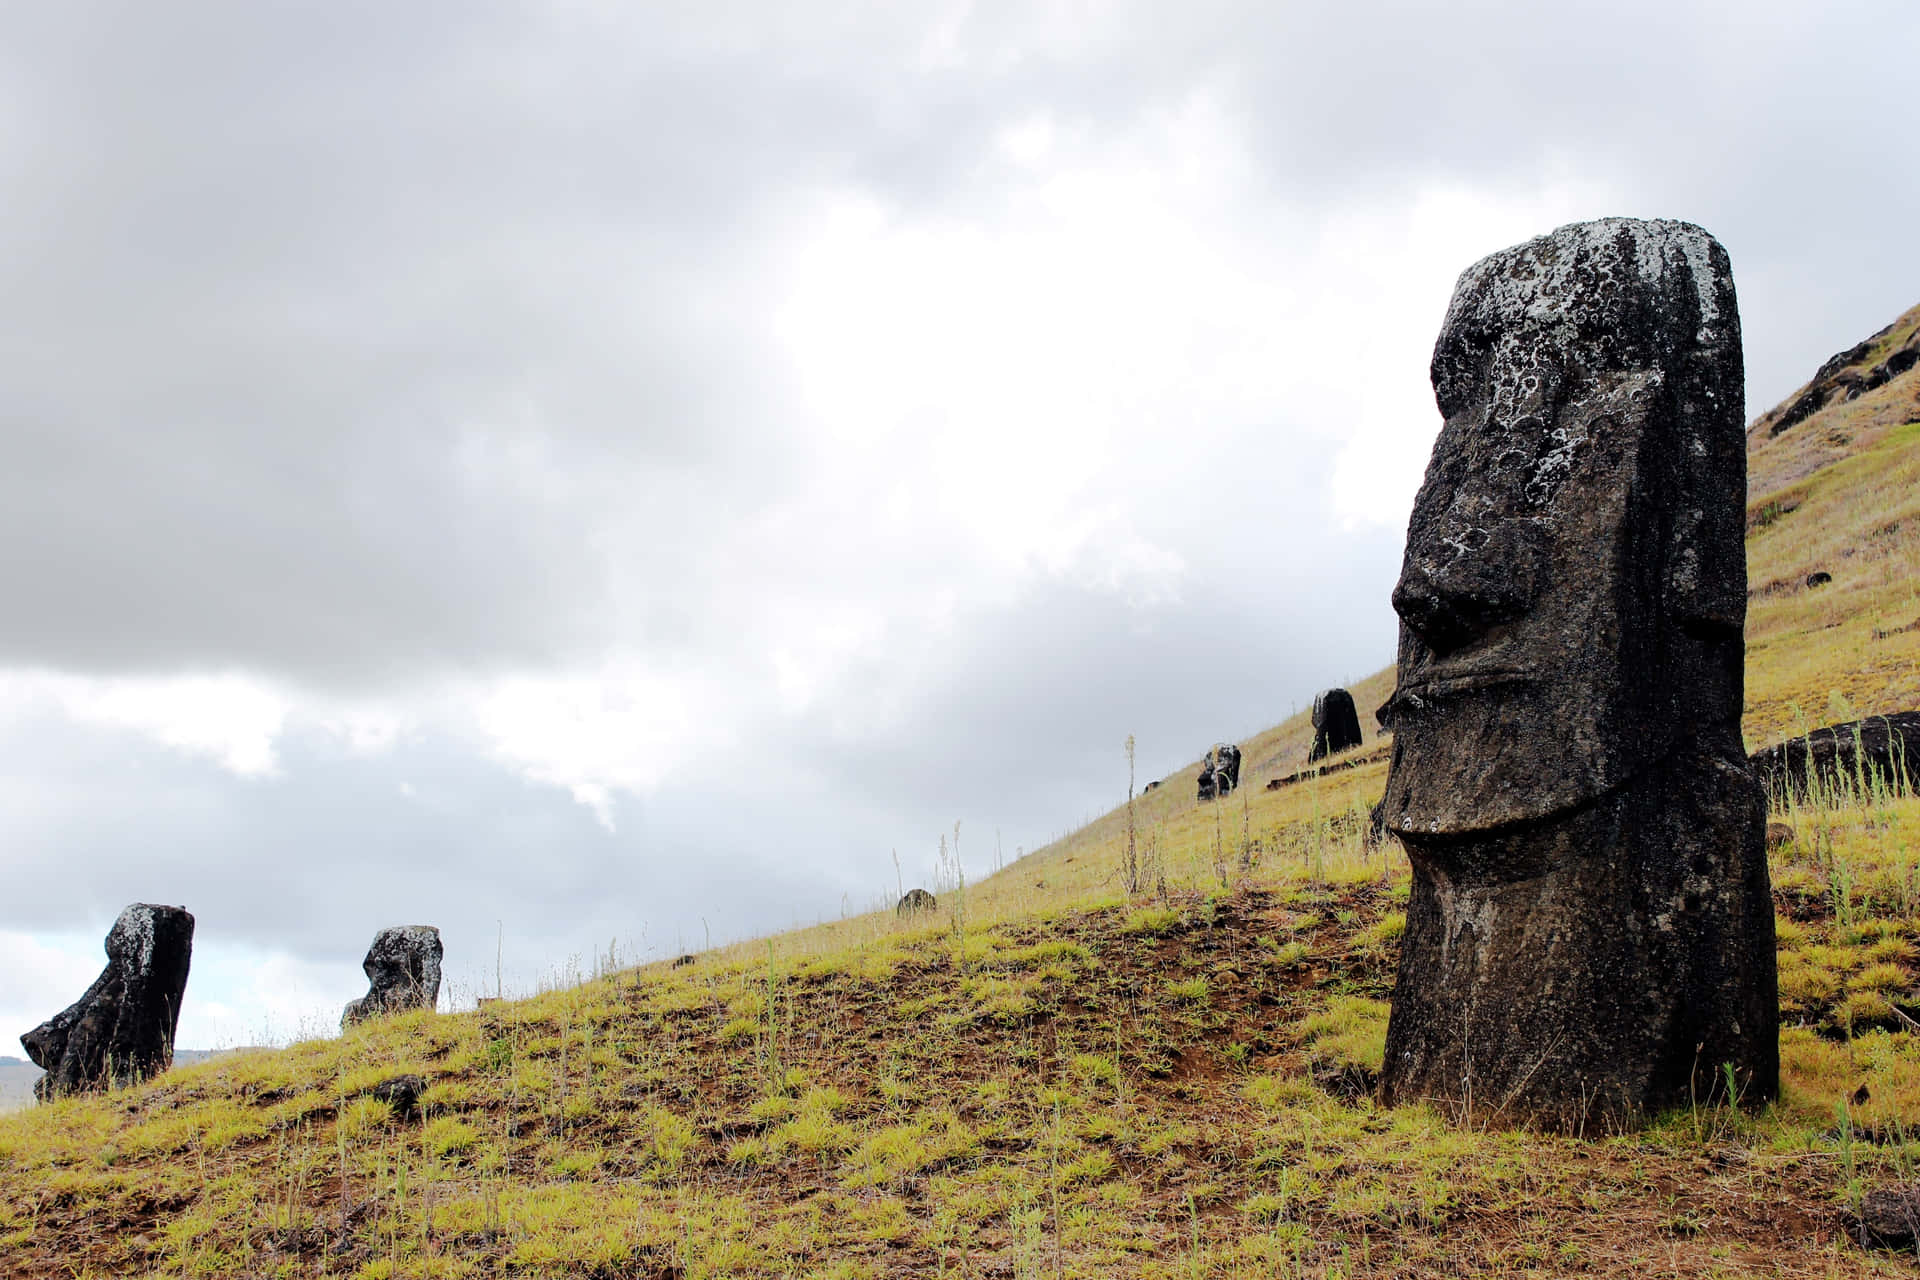 Maestosestatue Moai Sulle Aspre Terre Di Isola Di Pasqua, Cile. Sfondo